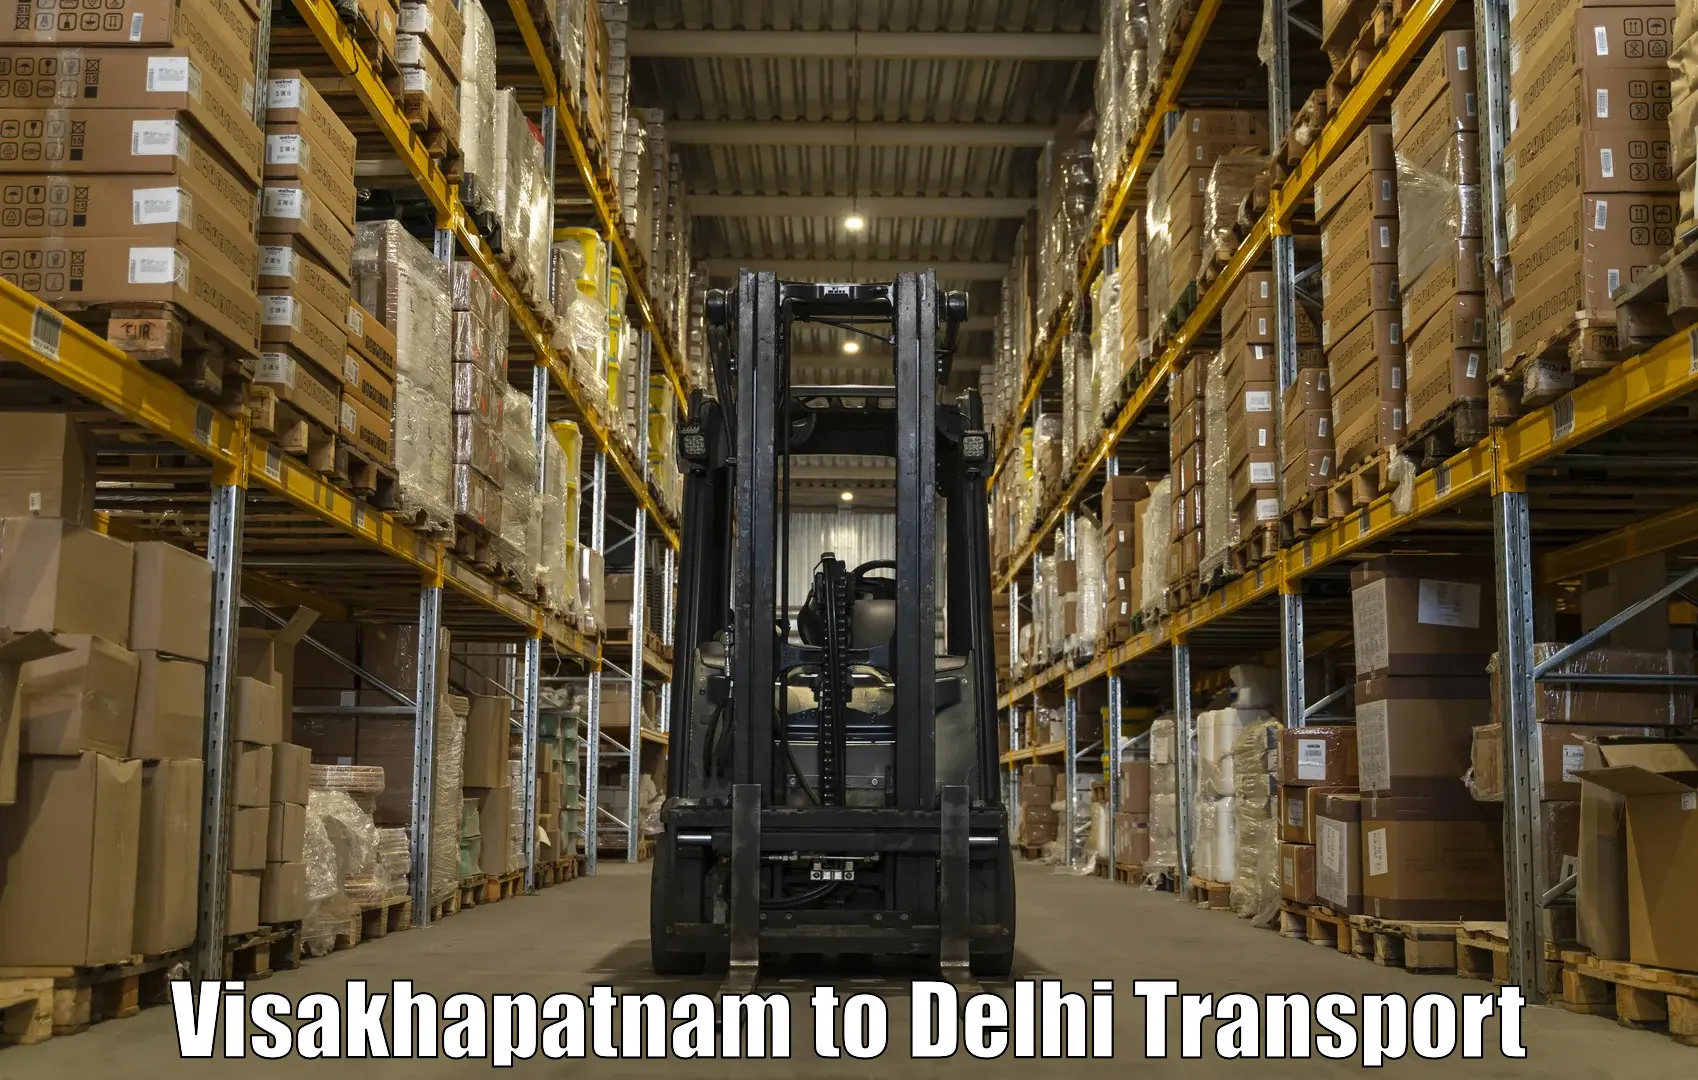 Truck transport companies in India Visakhapatnam to Kalkaji